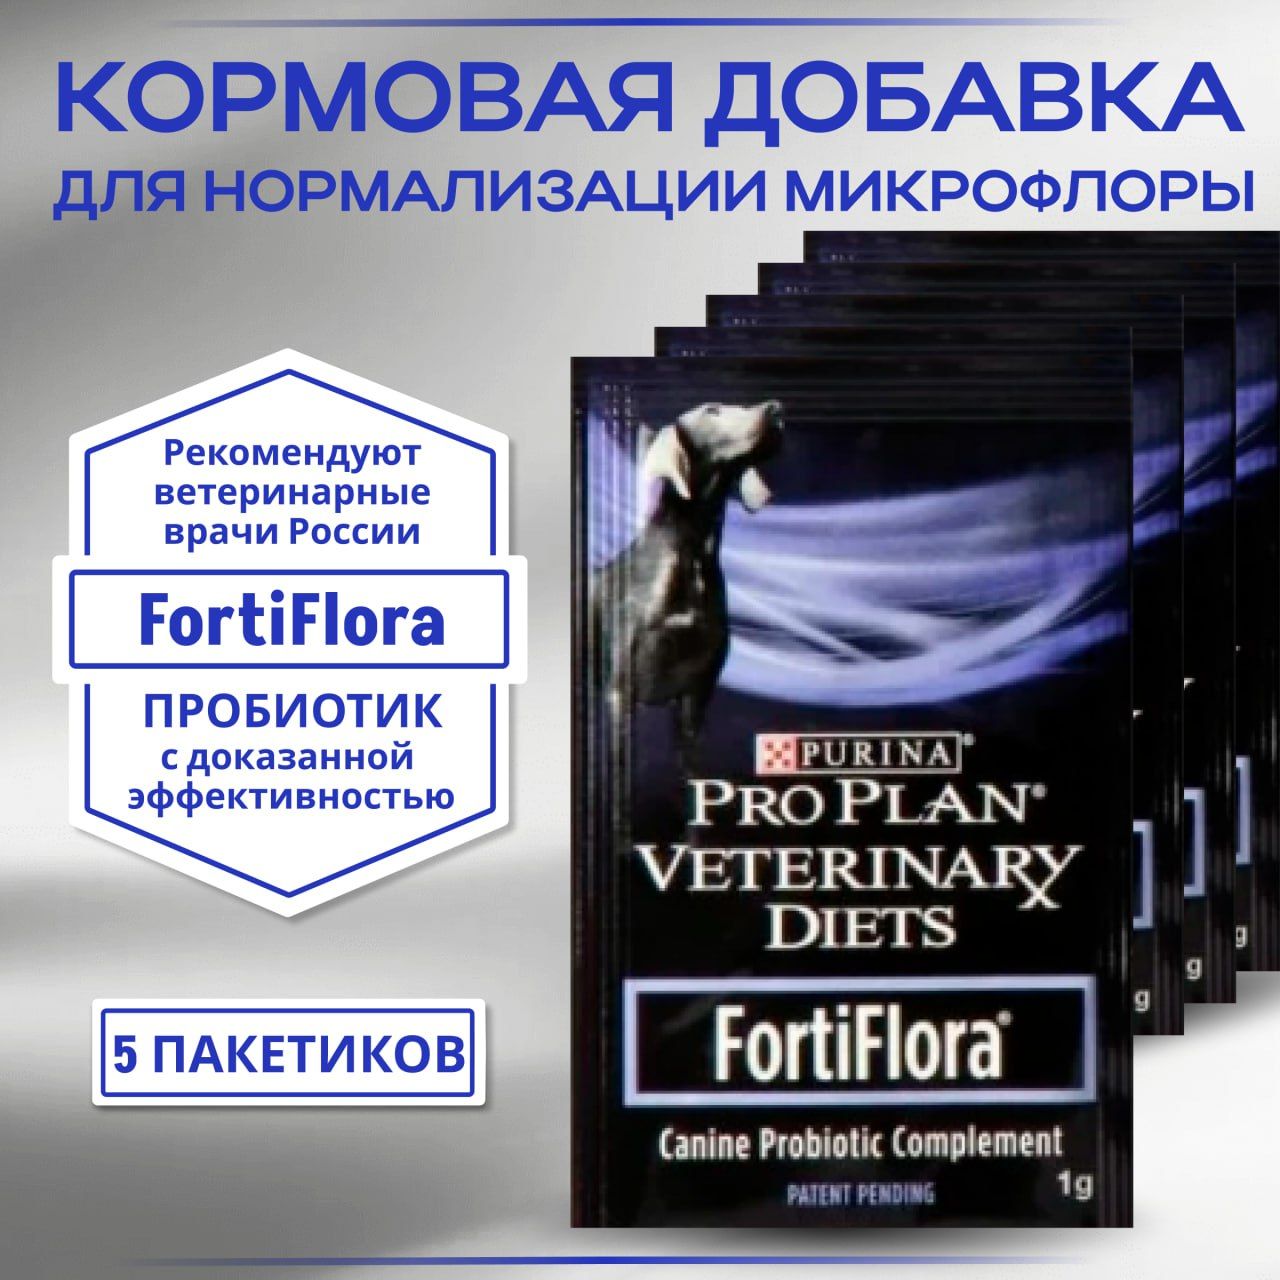 FortiFloraPurinaPROPLANпробиотикдлясобак,восстановлениежелудочно-кишечноймикрофлоры.5штук,1пакетик-1гр